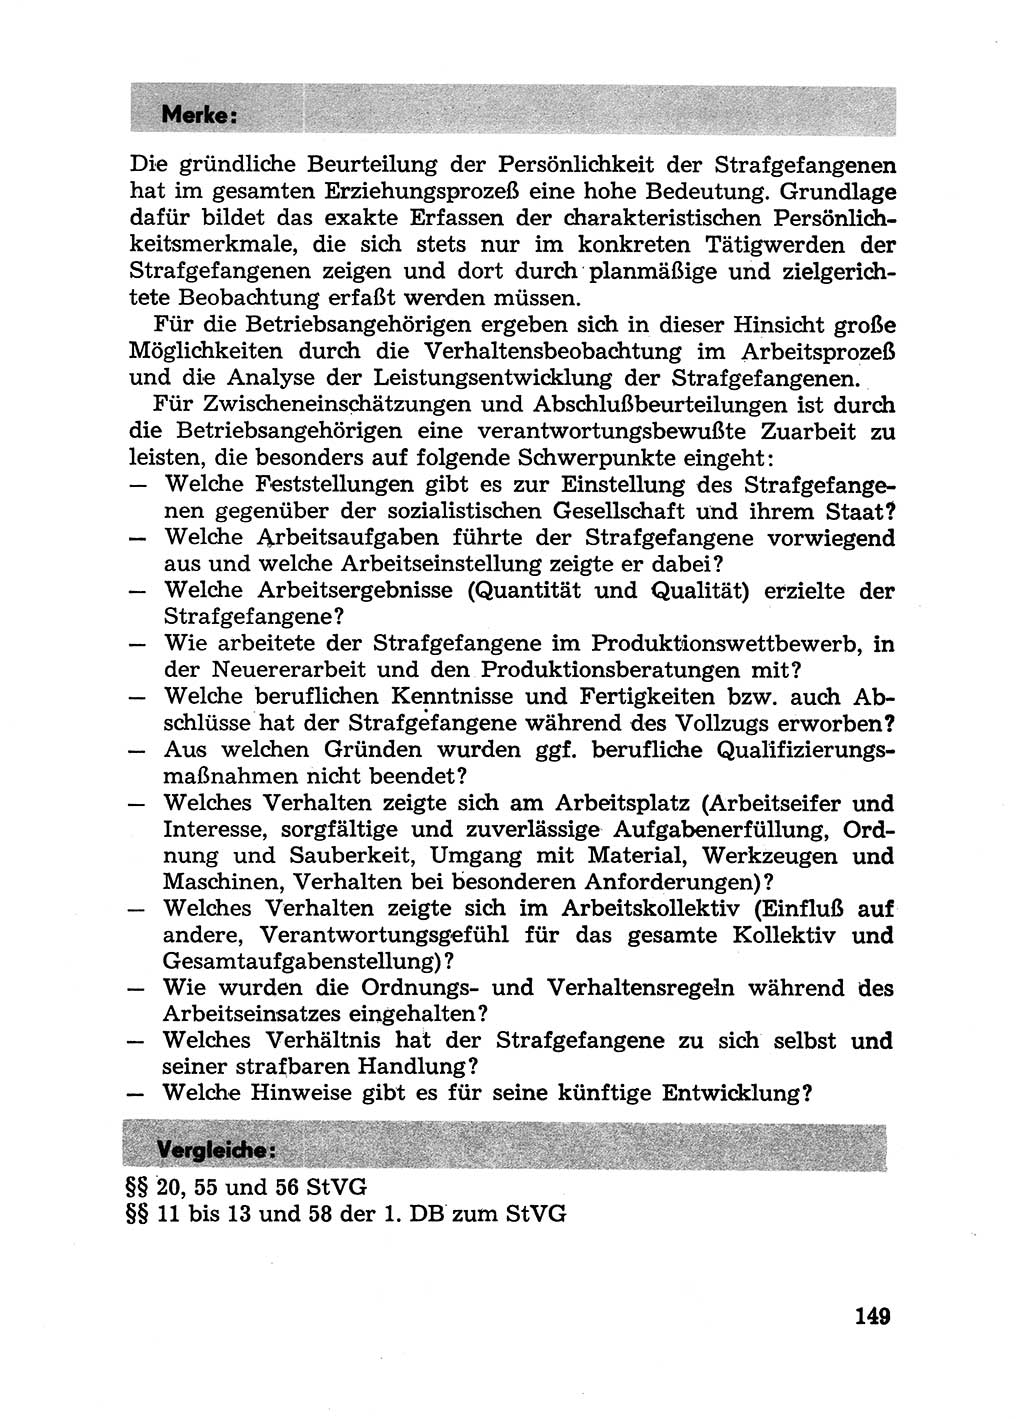 Handbuch für Betriebsangehörige, Abteilung Strafvollzug (SV) [Ministerium des Innern (MdI) Deutsche Demokratische Republik (DDR)] 1981, Seite 149 (Hb. BA Abt. SV MdI DDR 1981, S. 149)